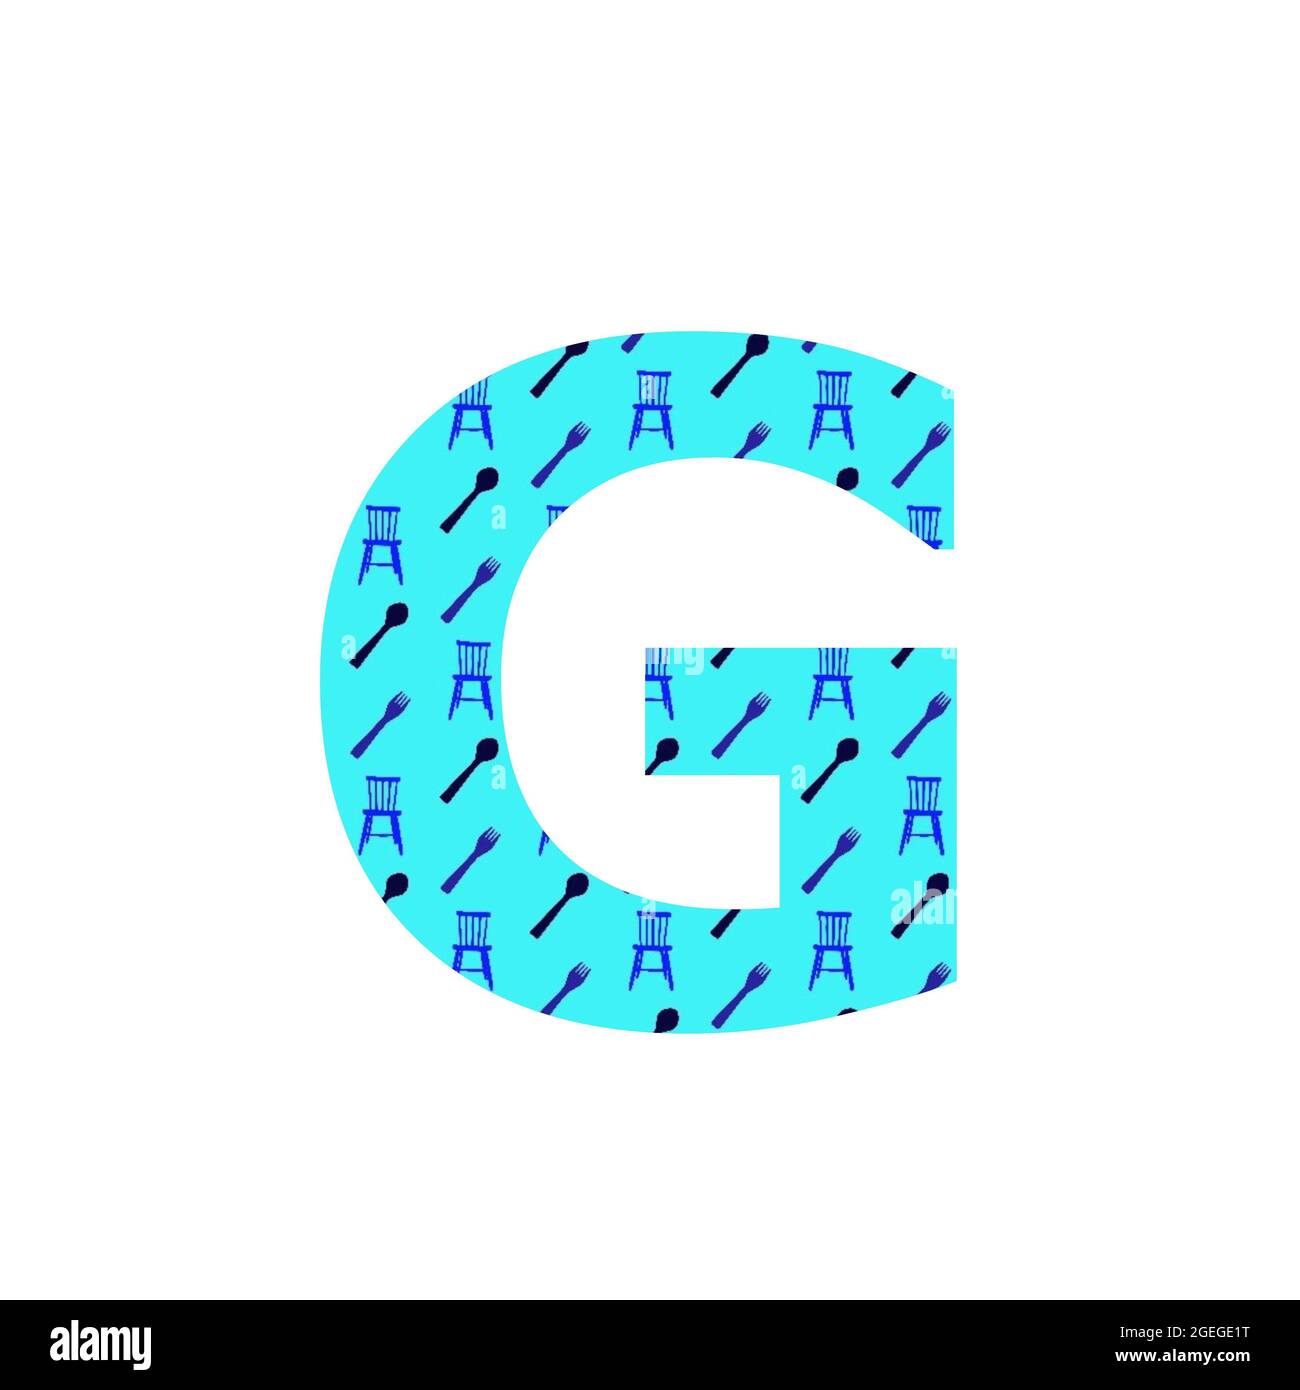 Lettera G dell'alfabeto, fatta con un modello di cucchiai, forchette e sedie da cucina, con sfondo blu, isolato su sfondo bianco Foto Stock